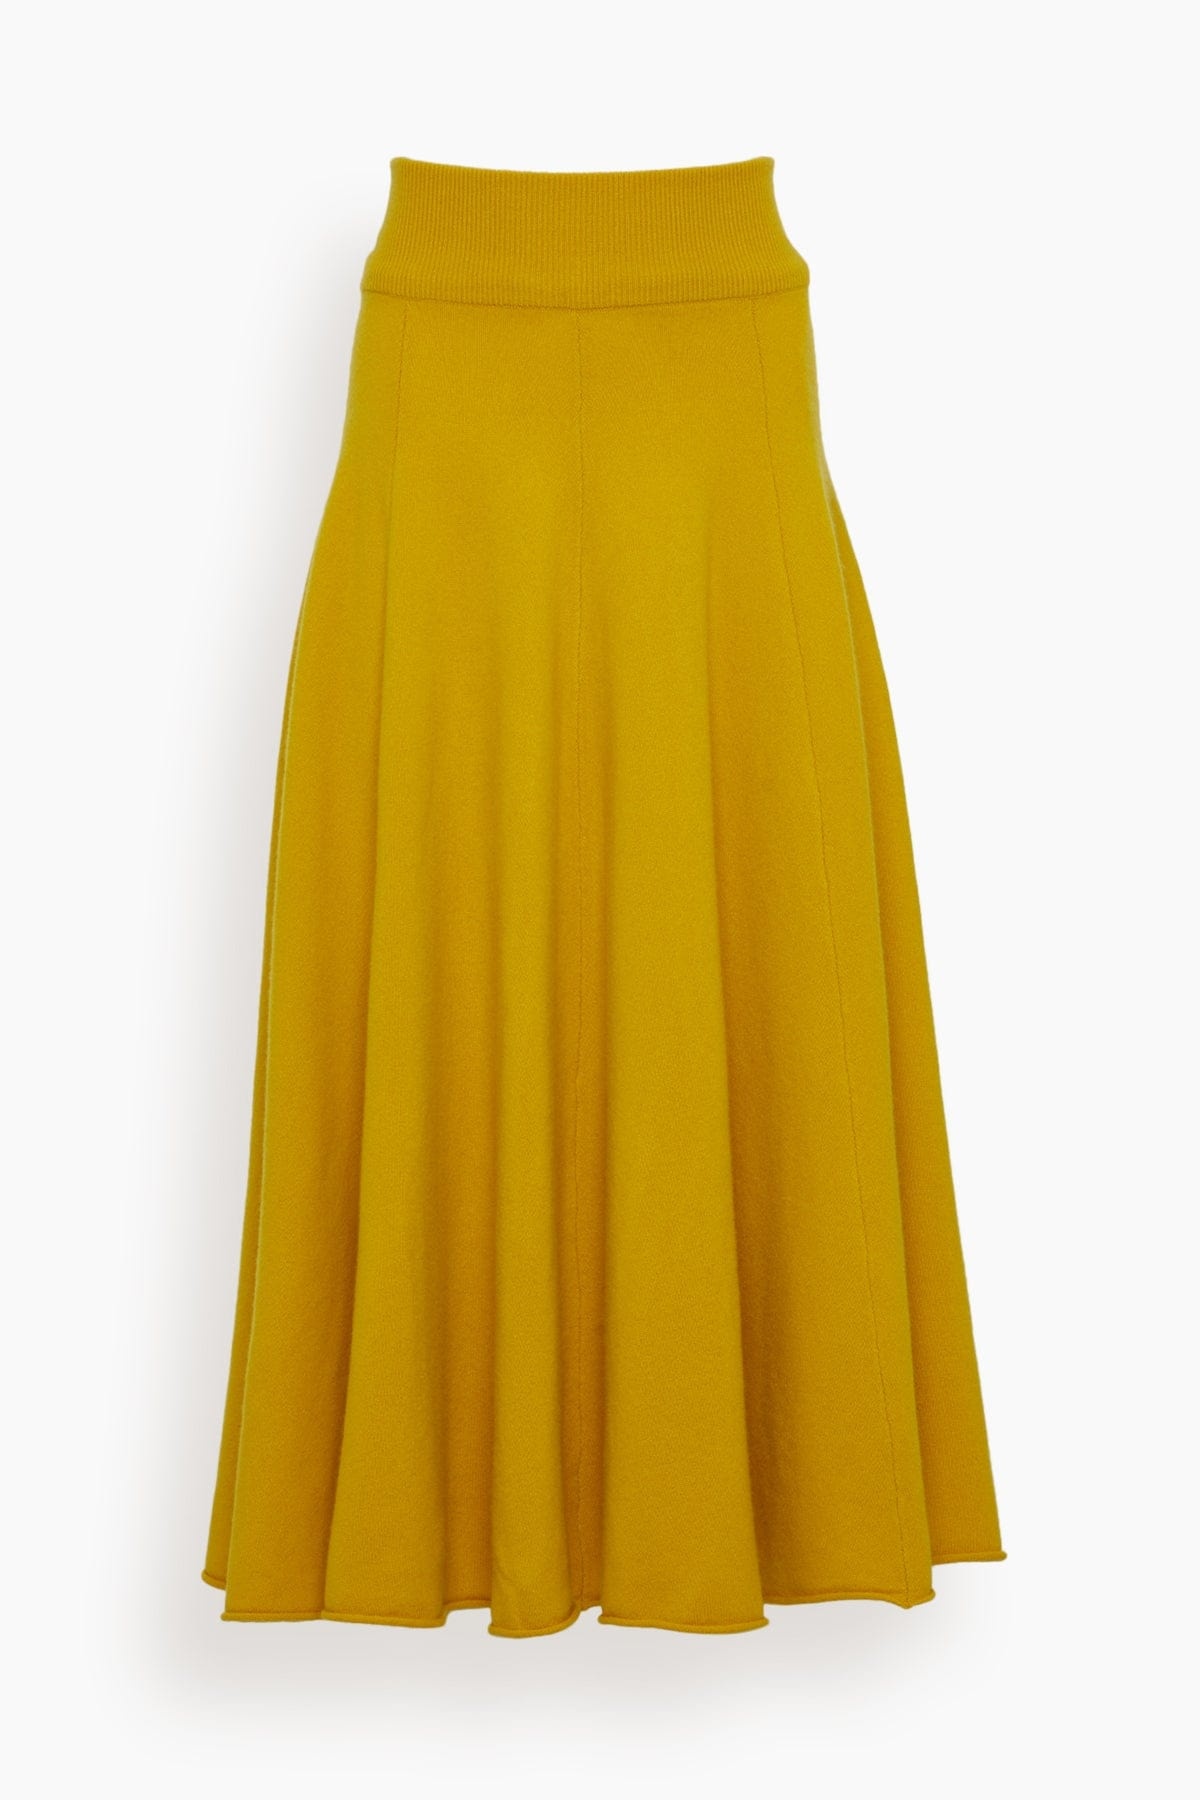 Twirl Skirt in Sunflower - 1